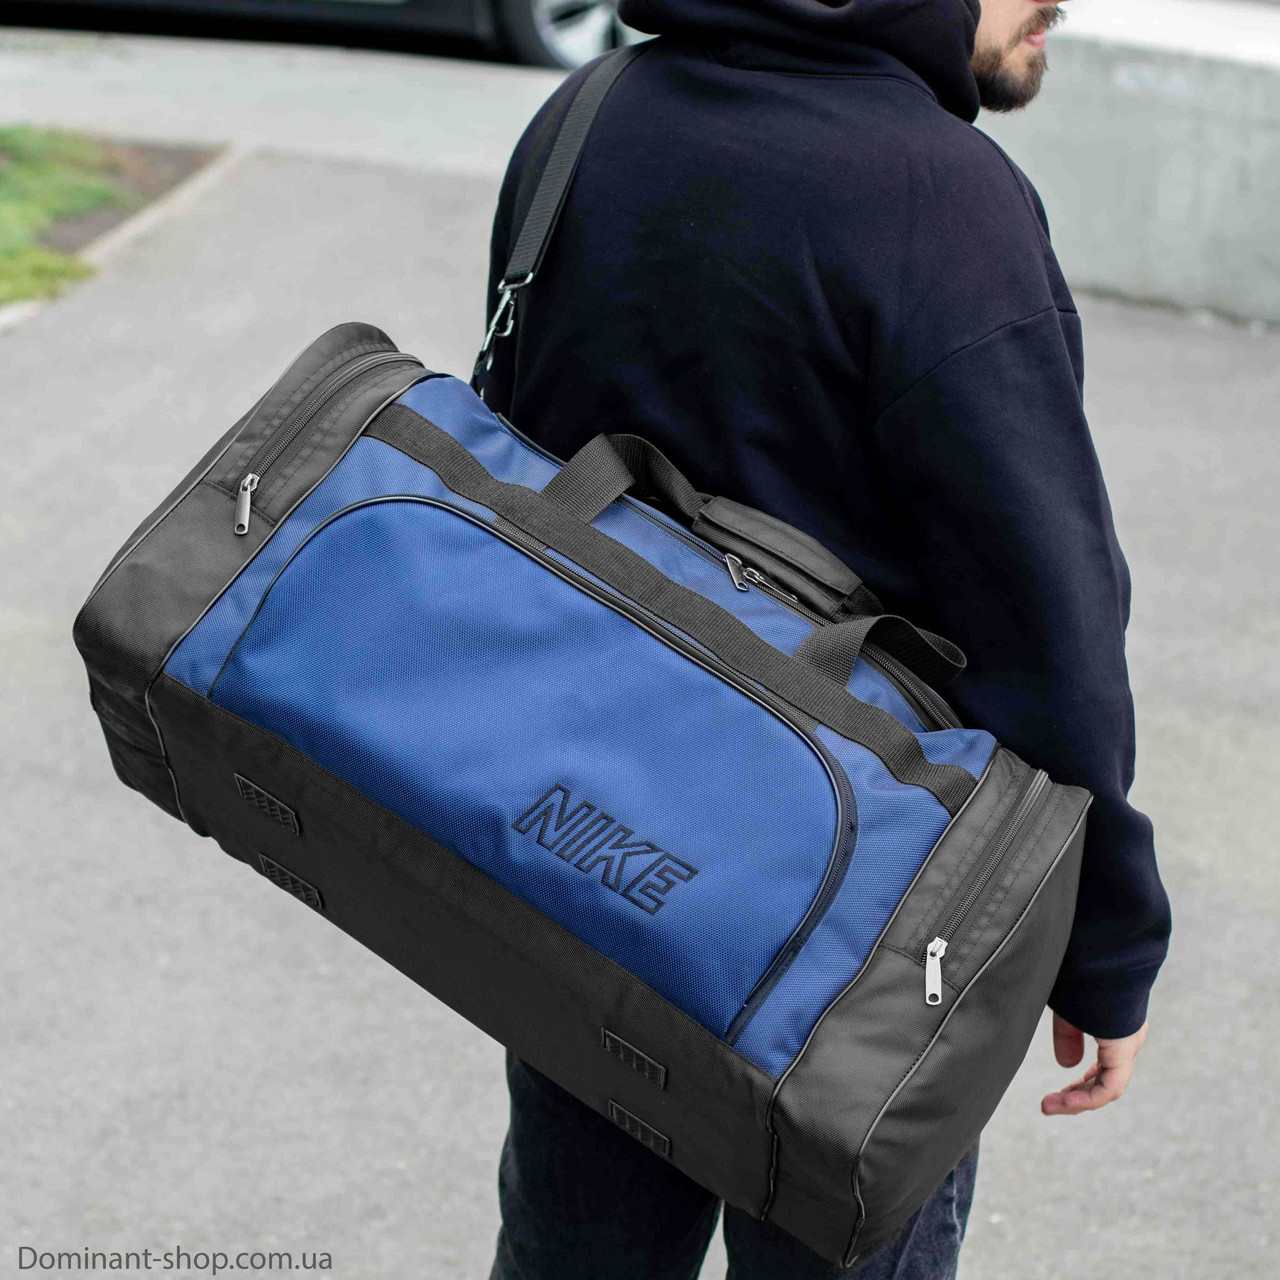 Спортивна дорожня сумка Nike biz синя чорна для тренувань та екіпірування на 60 літрів якісна Міцна